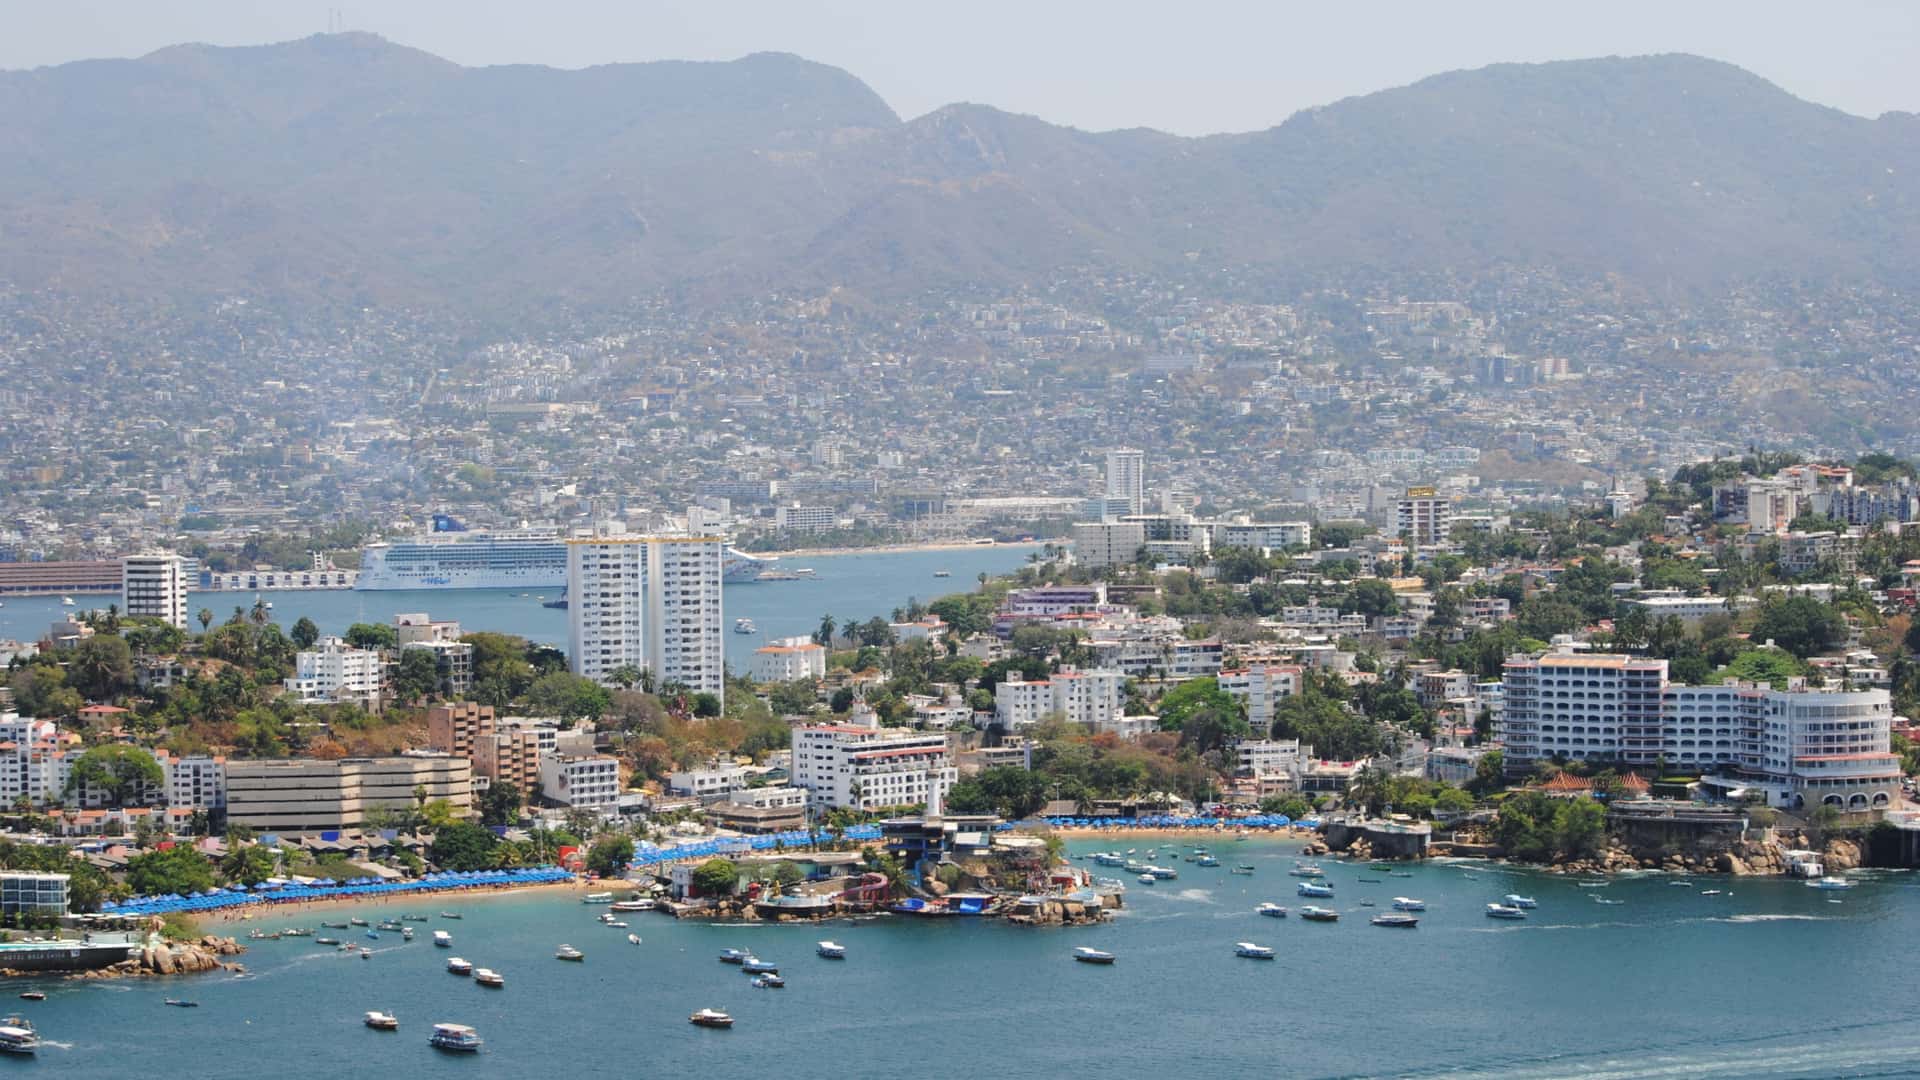 vista aerea de acapulco mexico para representar las sucrusales de movistar en esa localidad